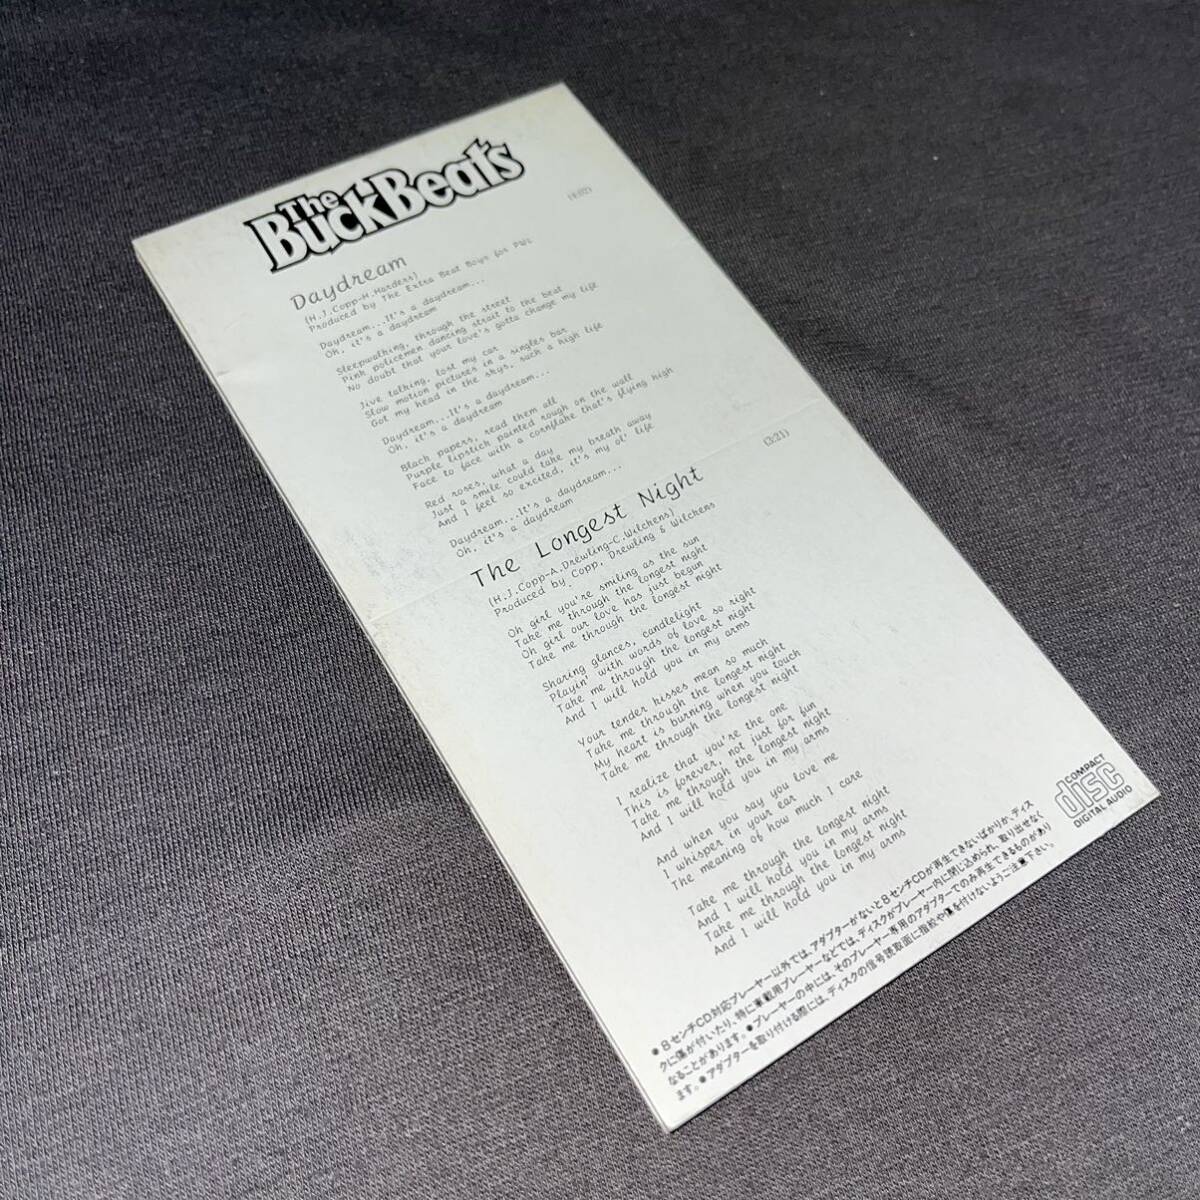 The Buckbeats / Daydream 日本盤 8cm CD (10GD5009) PWL ザ・バックビーツ / デイドリーム 8cmCD CDSの画像2